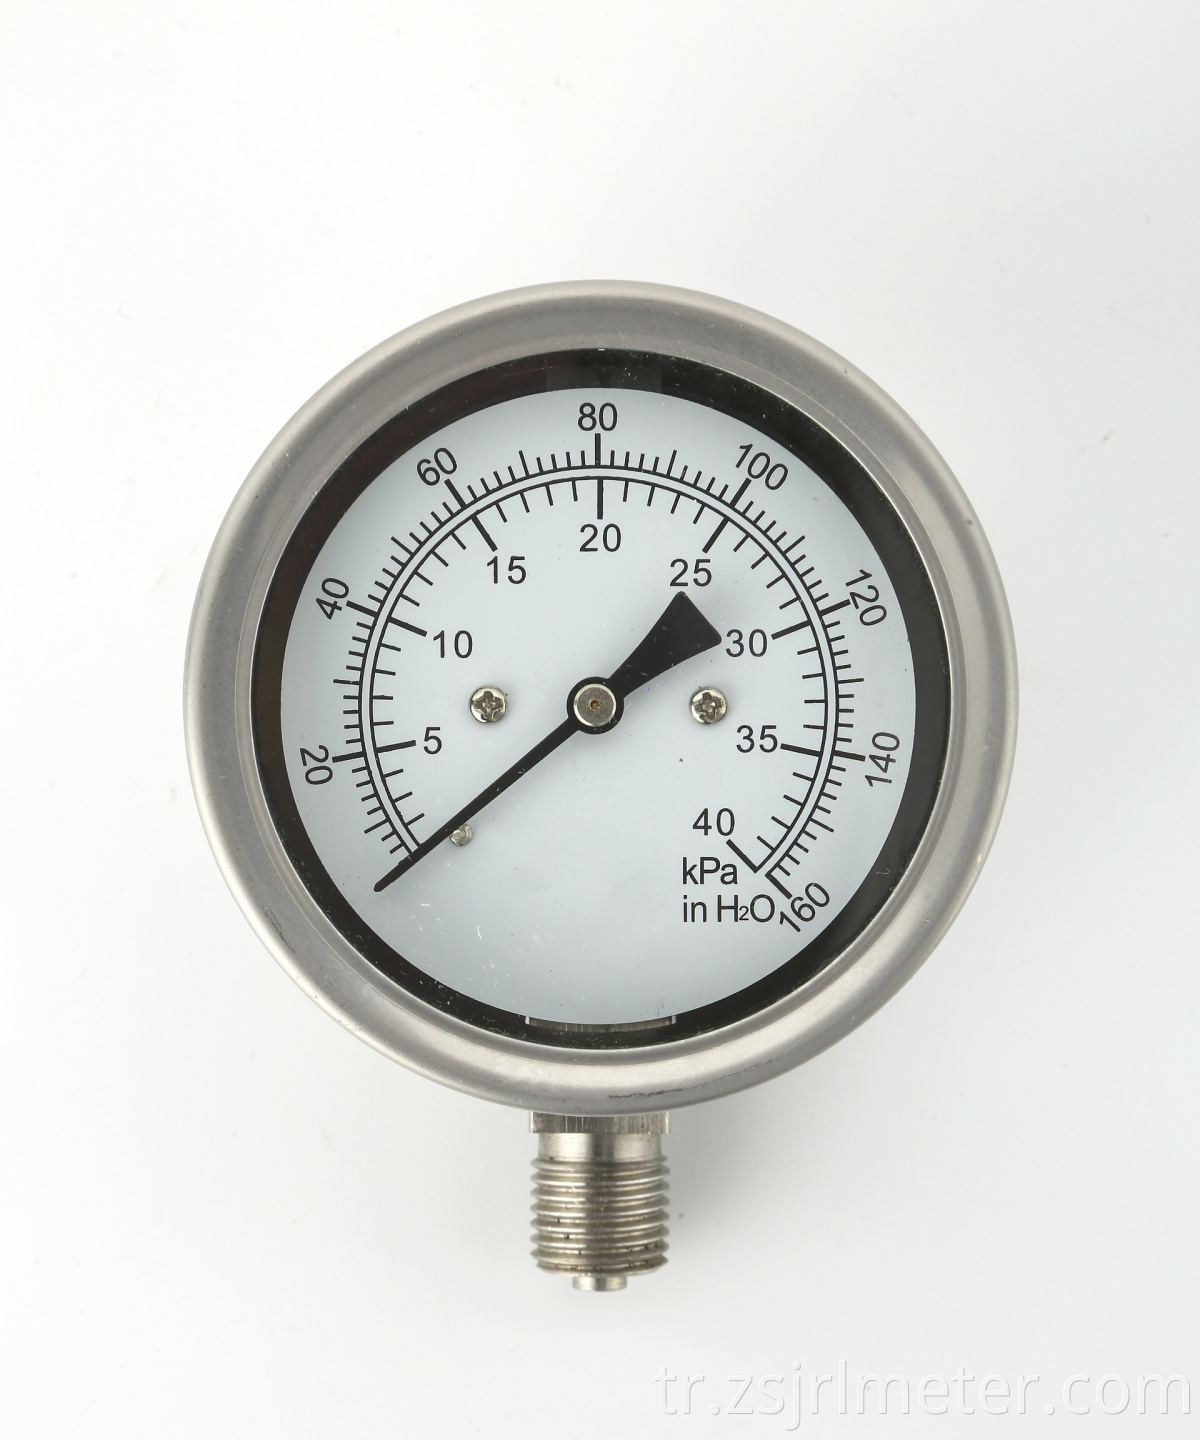 Sıcak satış kaliteli kapsül paslanmaz çelik manometre mimor basınç ölçer